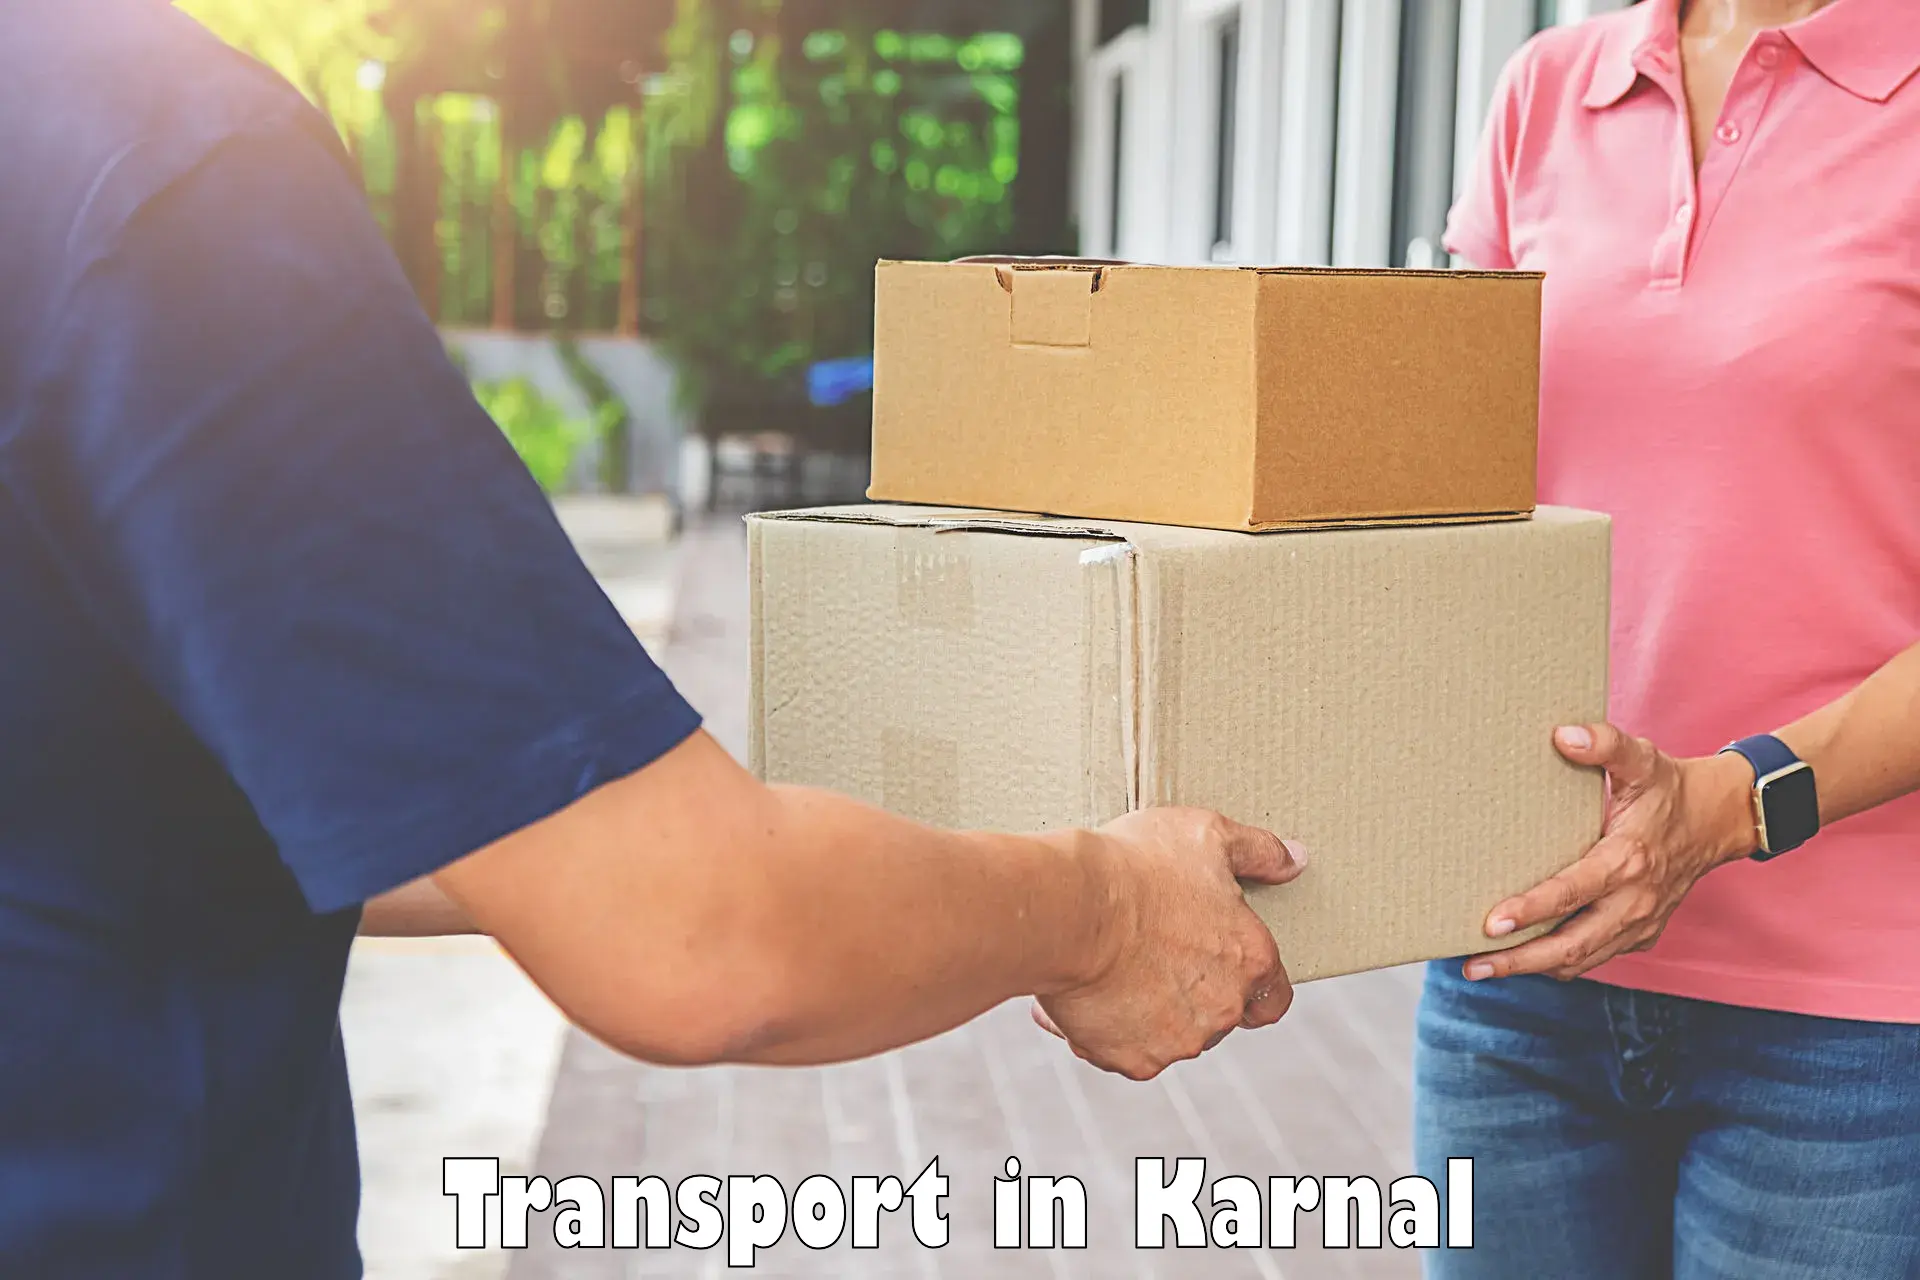 Land transport services in Karnal